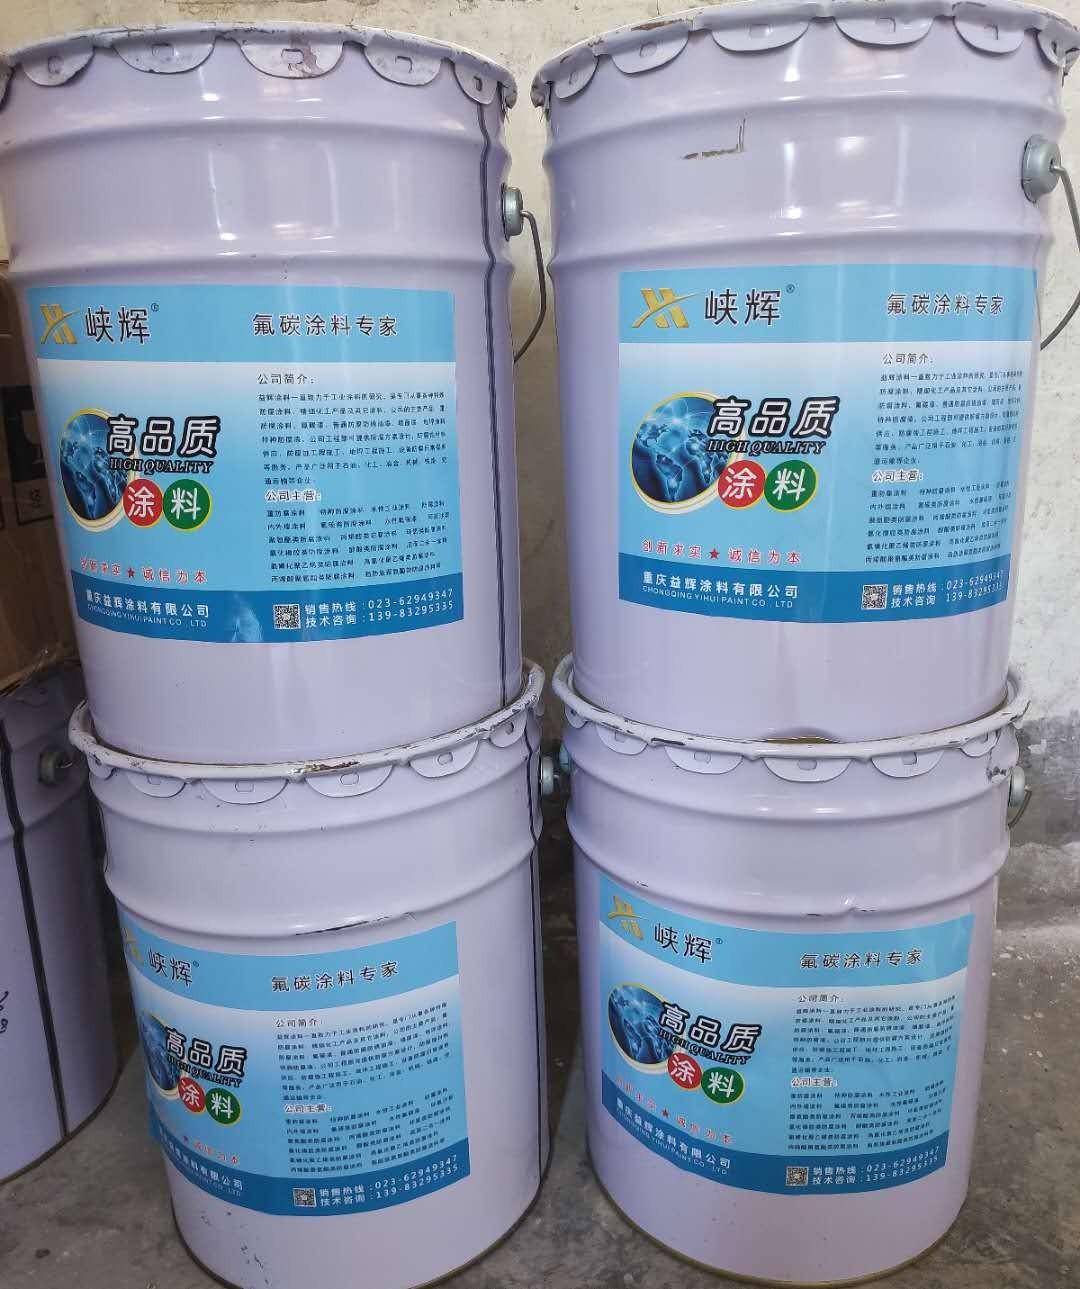 重庆市政工程蓝白油性氟碳漆